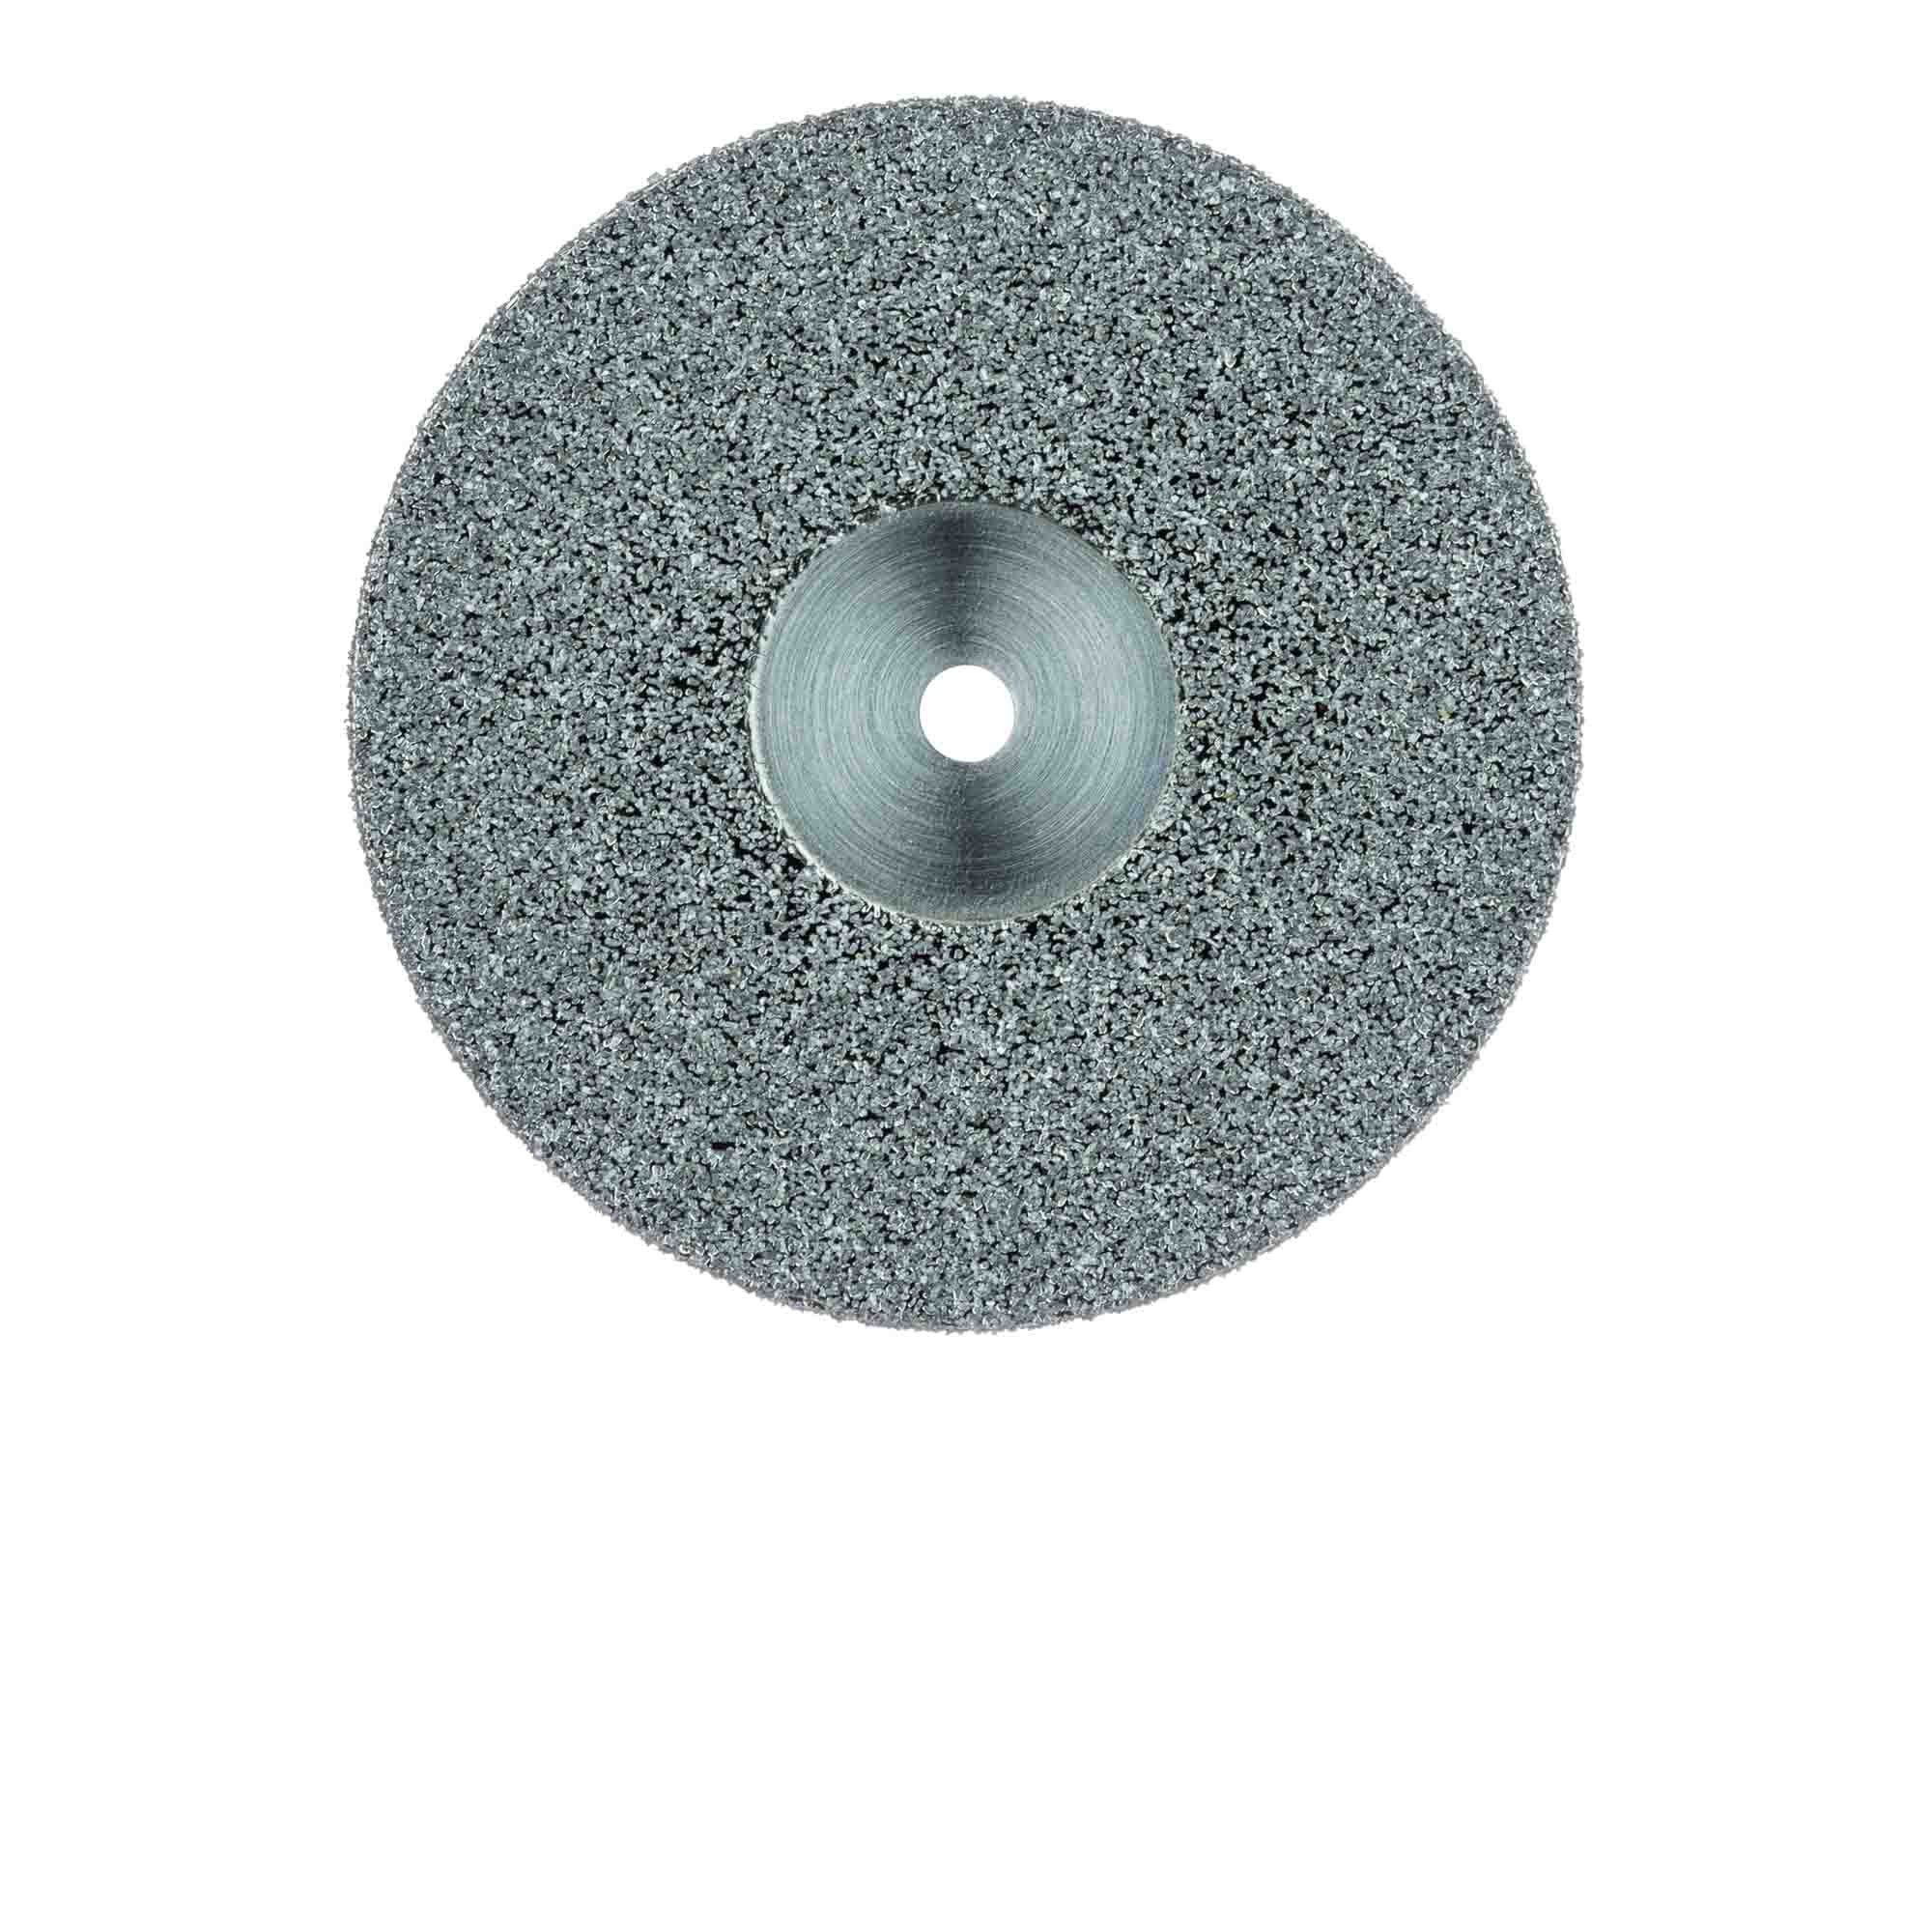 Meule diamant SDC (3-12 mm) pour DG 13 MD/DG 32 Pro 